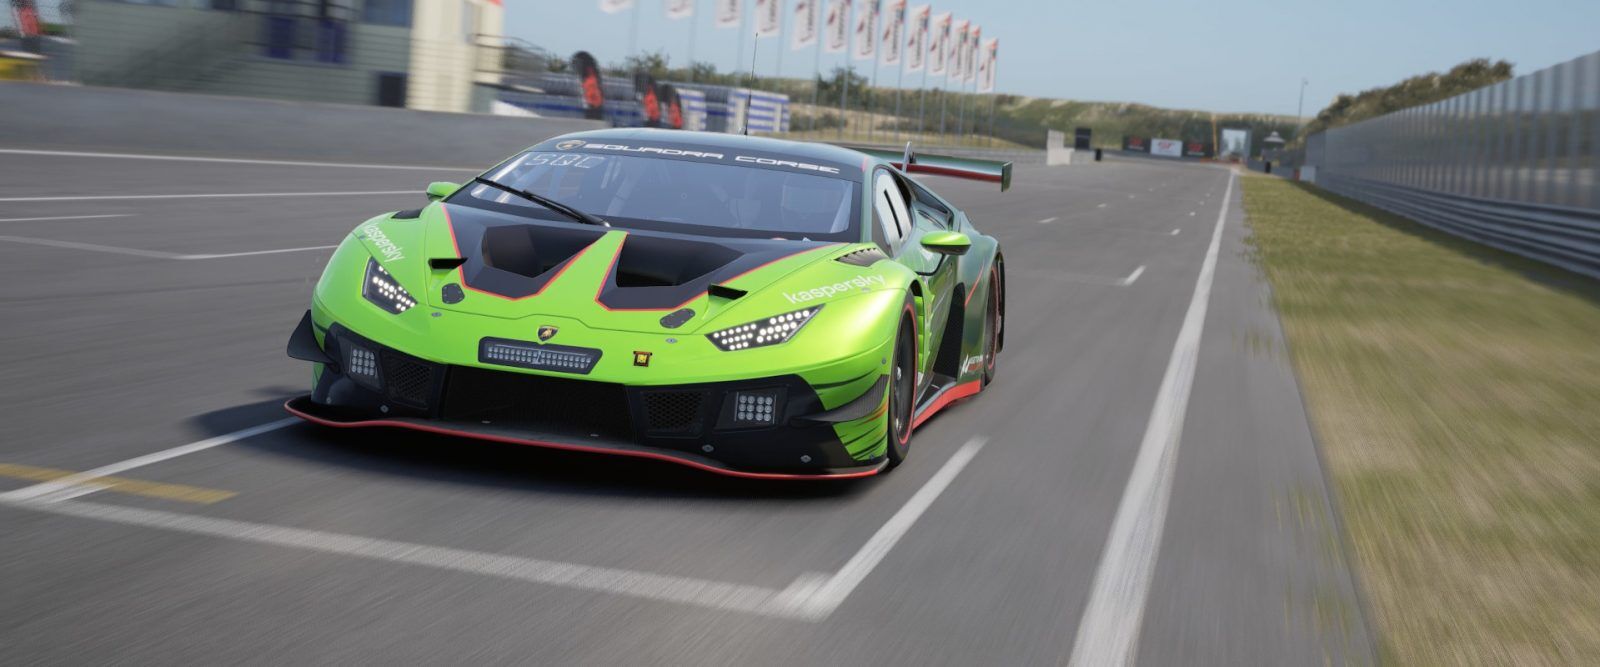 Lamborghini's The Real Race returns for 2021